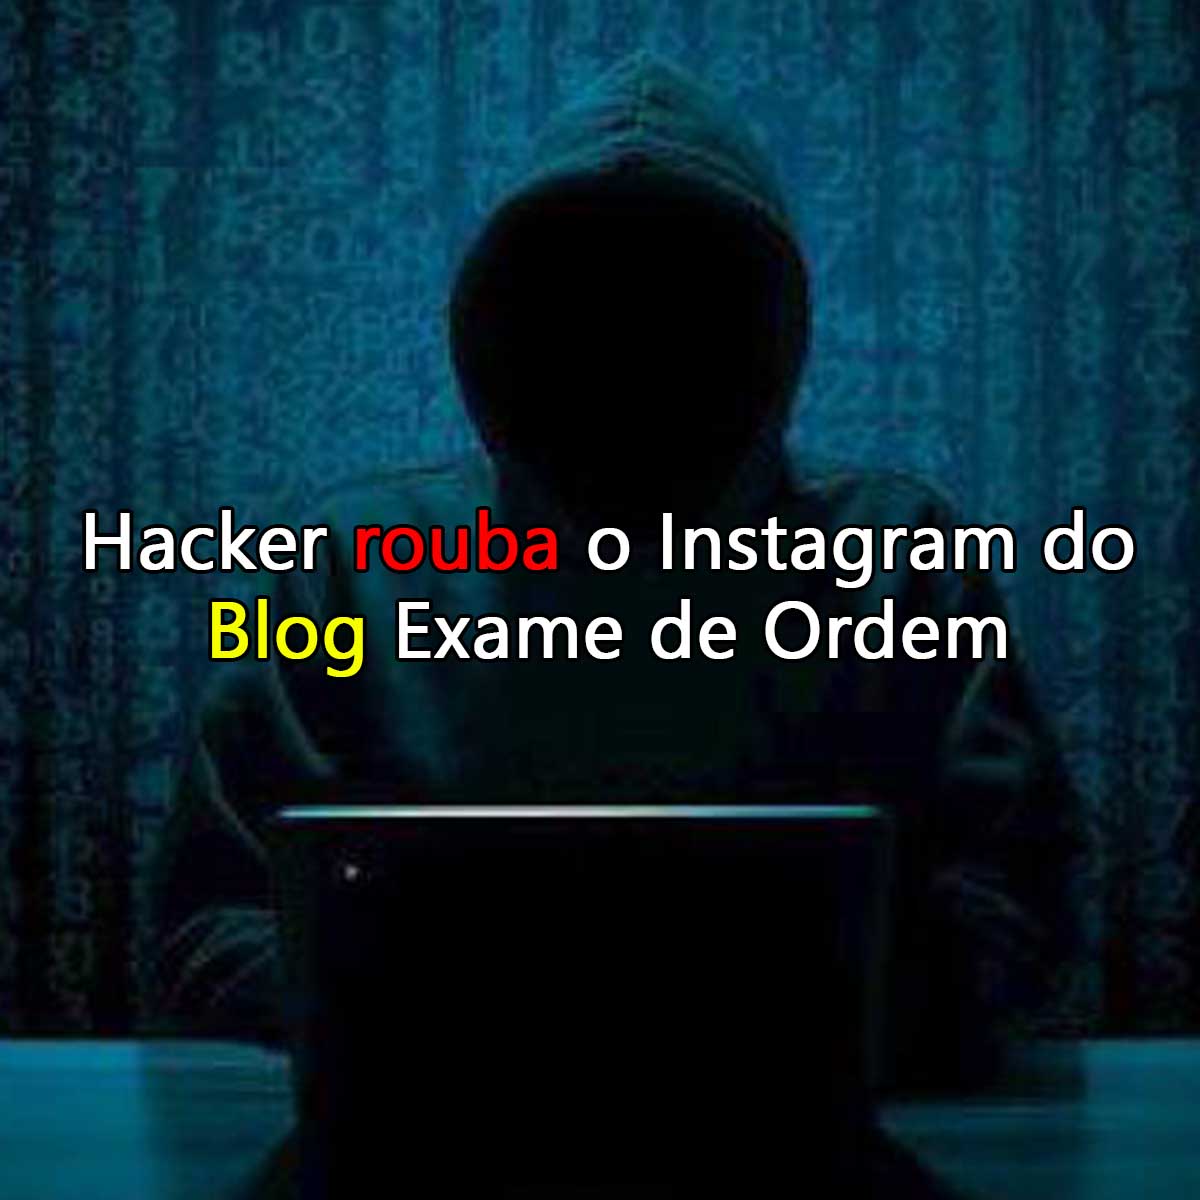 Hacker rouba o Instagram do Blog Exame de Ordem